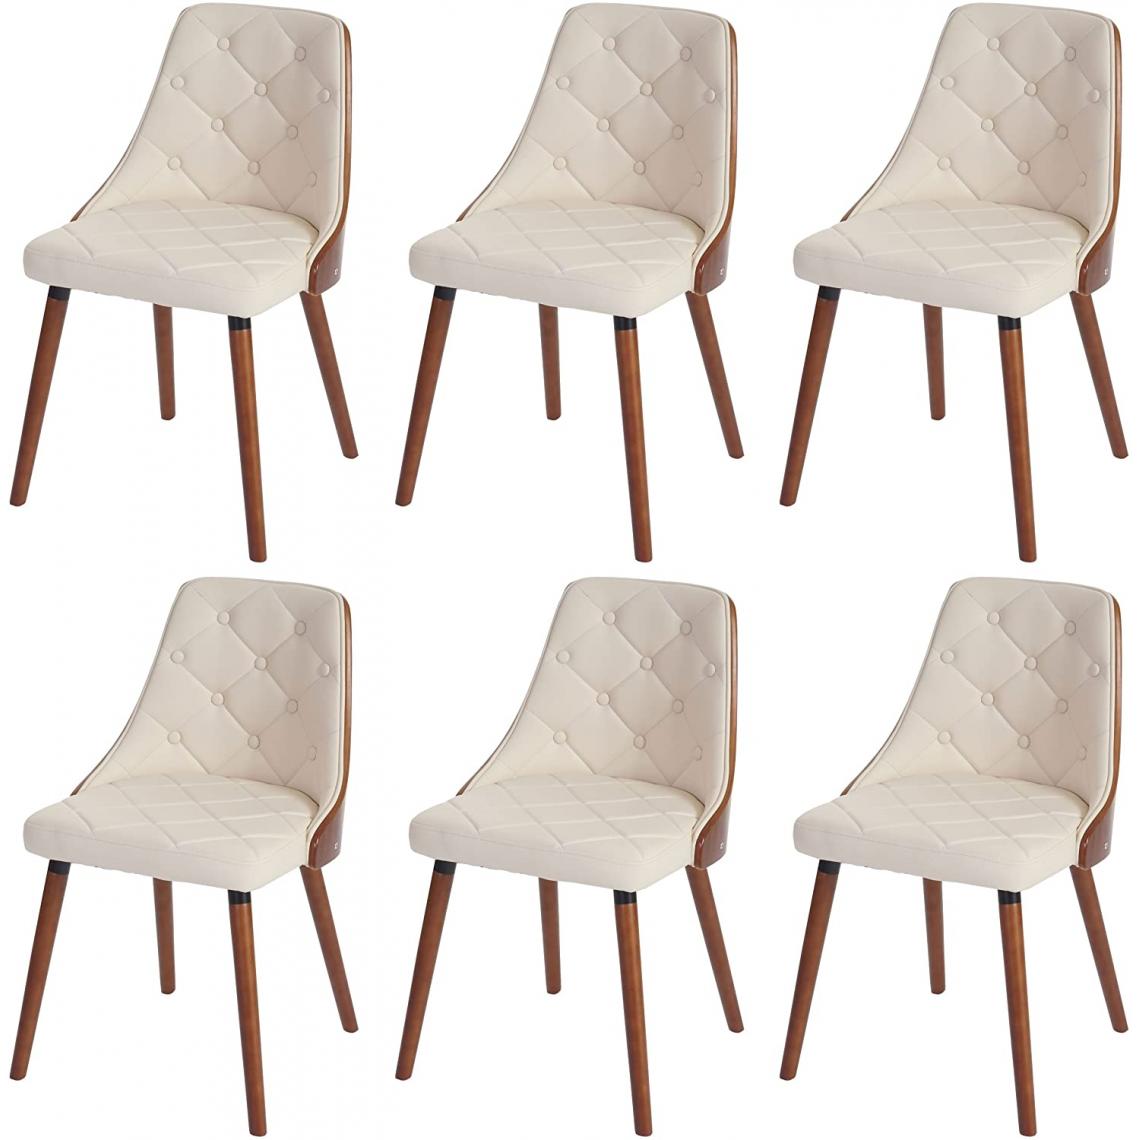 Decoshop26 - Lot de 6 chaises de salle à manger capitonné design chic en bois noyer et assise en similicuir crème CDS04669 - Chaises